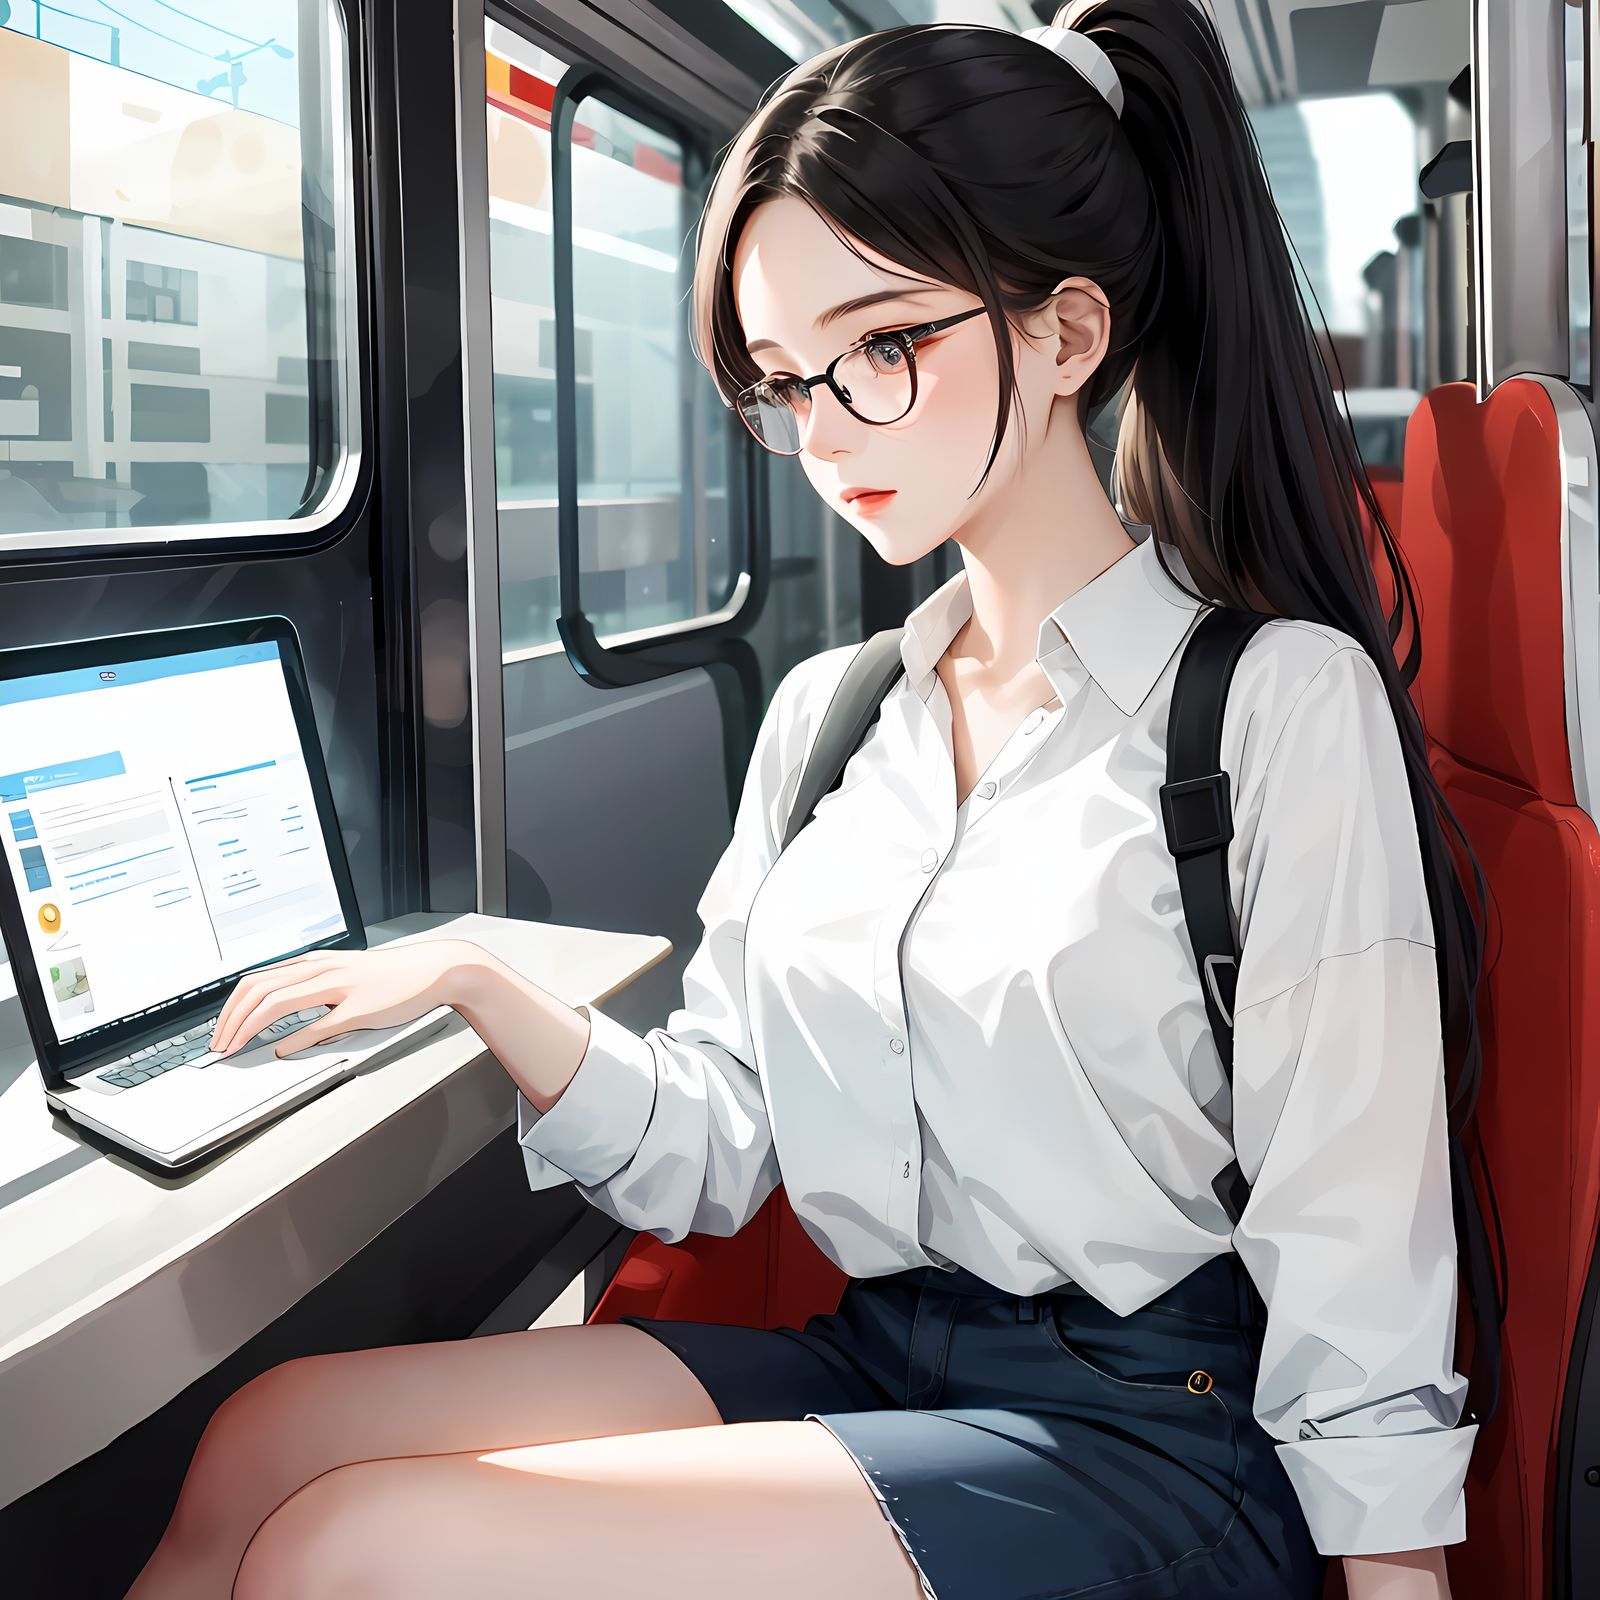 二次元少女乘着火车操控平板电脑，她眼镜齐刘海，长发飘逸，身边还有手机和笔记本电脑。